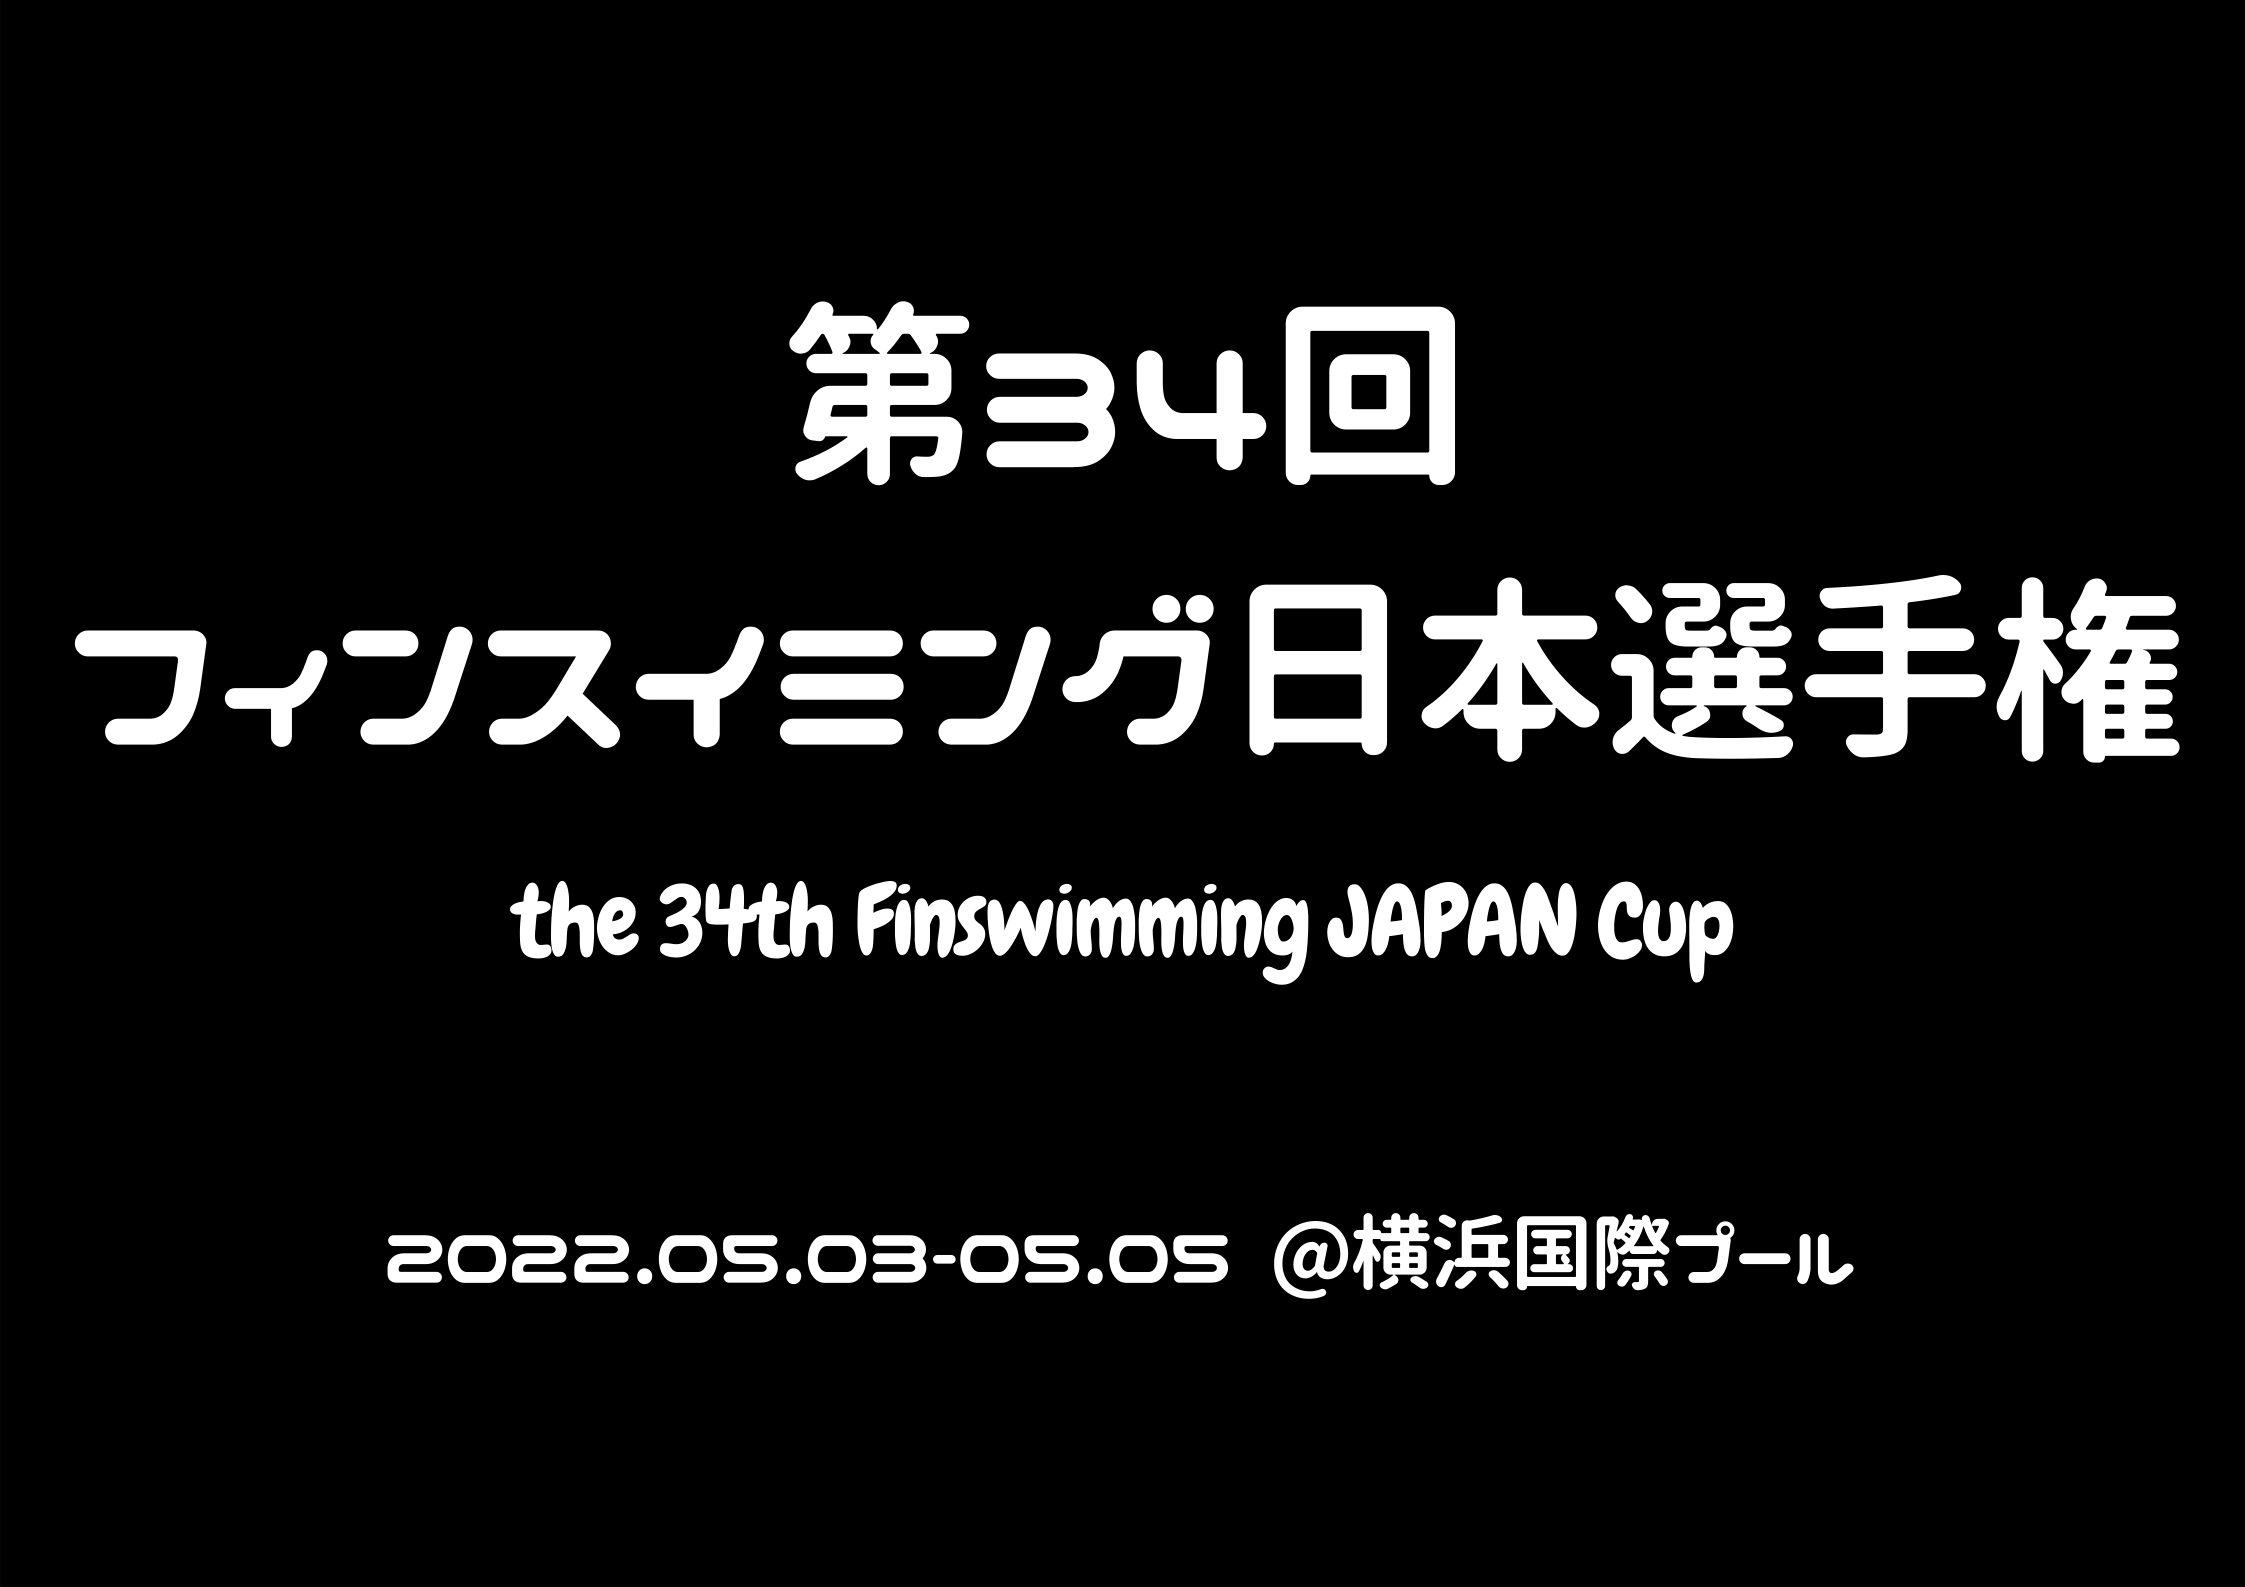 【大会情報】第34回フィンスイミング日本選手権